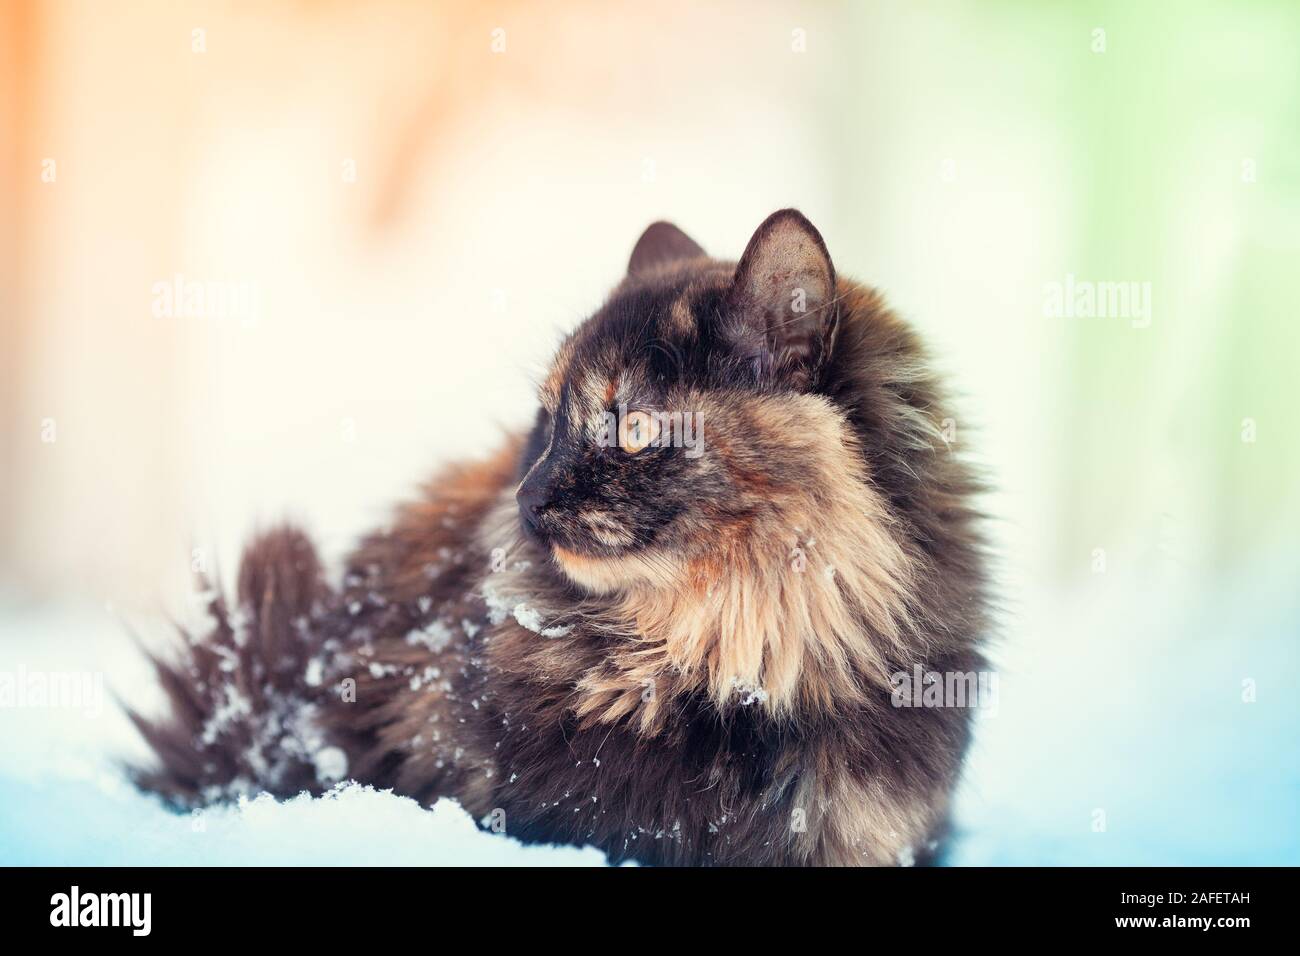 Porträt einer Langhaar schildpatt Katze im Schnee. Katze im Freien in  schneereichen Winter Stockfotografie - Alamy